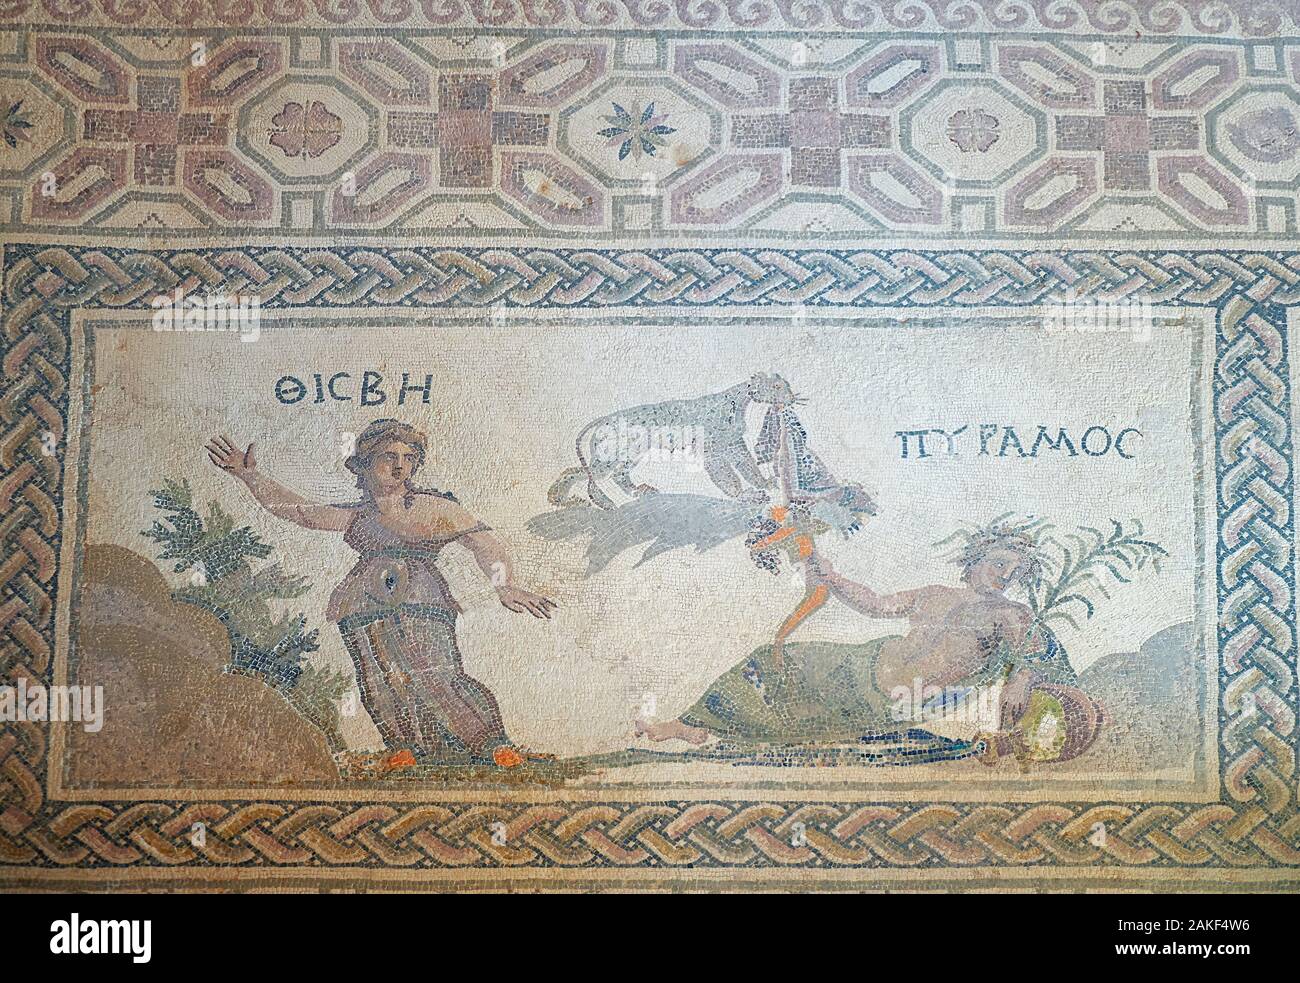 PAPHOS, Chypre - Juin 08, 2018 : marbre mosaïque représentant l'histoire d'amour myphological Pyramos et Thisbe dans la villa Dionysos. Archéologique de Paphos Banque D'Images